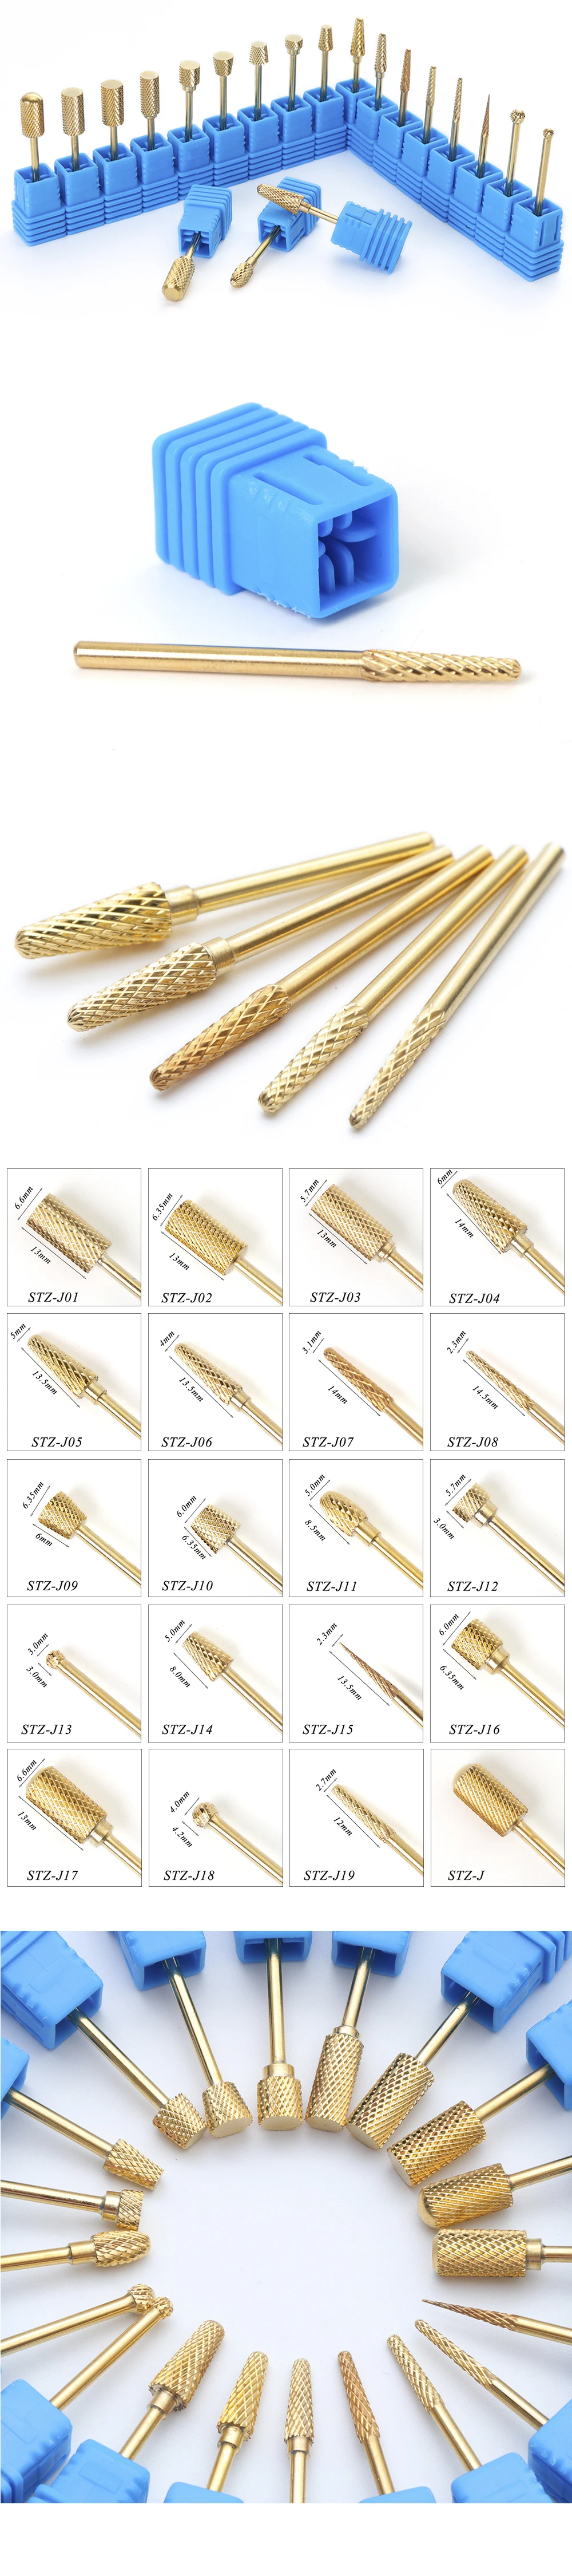 20 типов золотистого карбида сверла электрические сверла для ногтей металлический Резак для маникюра фрезы пилки для ногтей вращающиеся сверла аксессуары CHSTZ-J